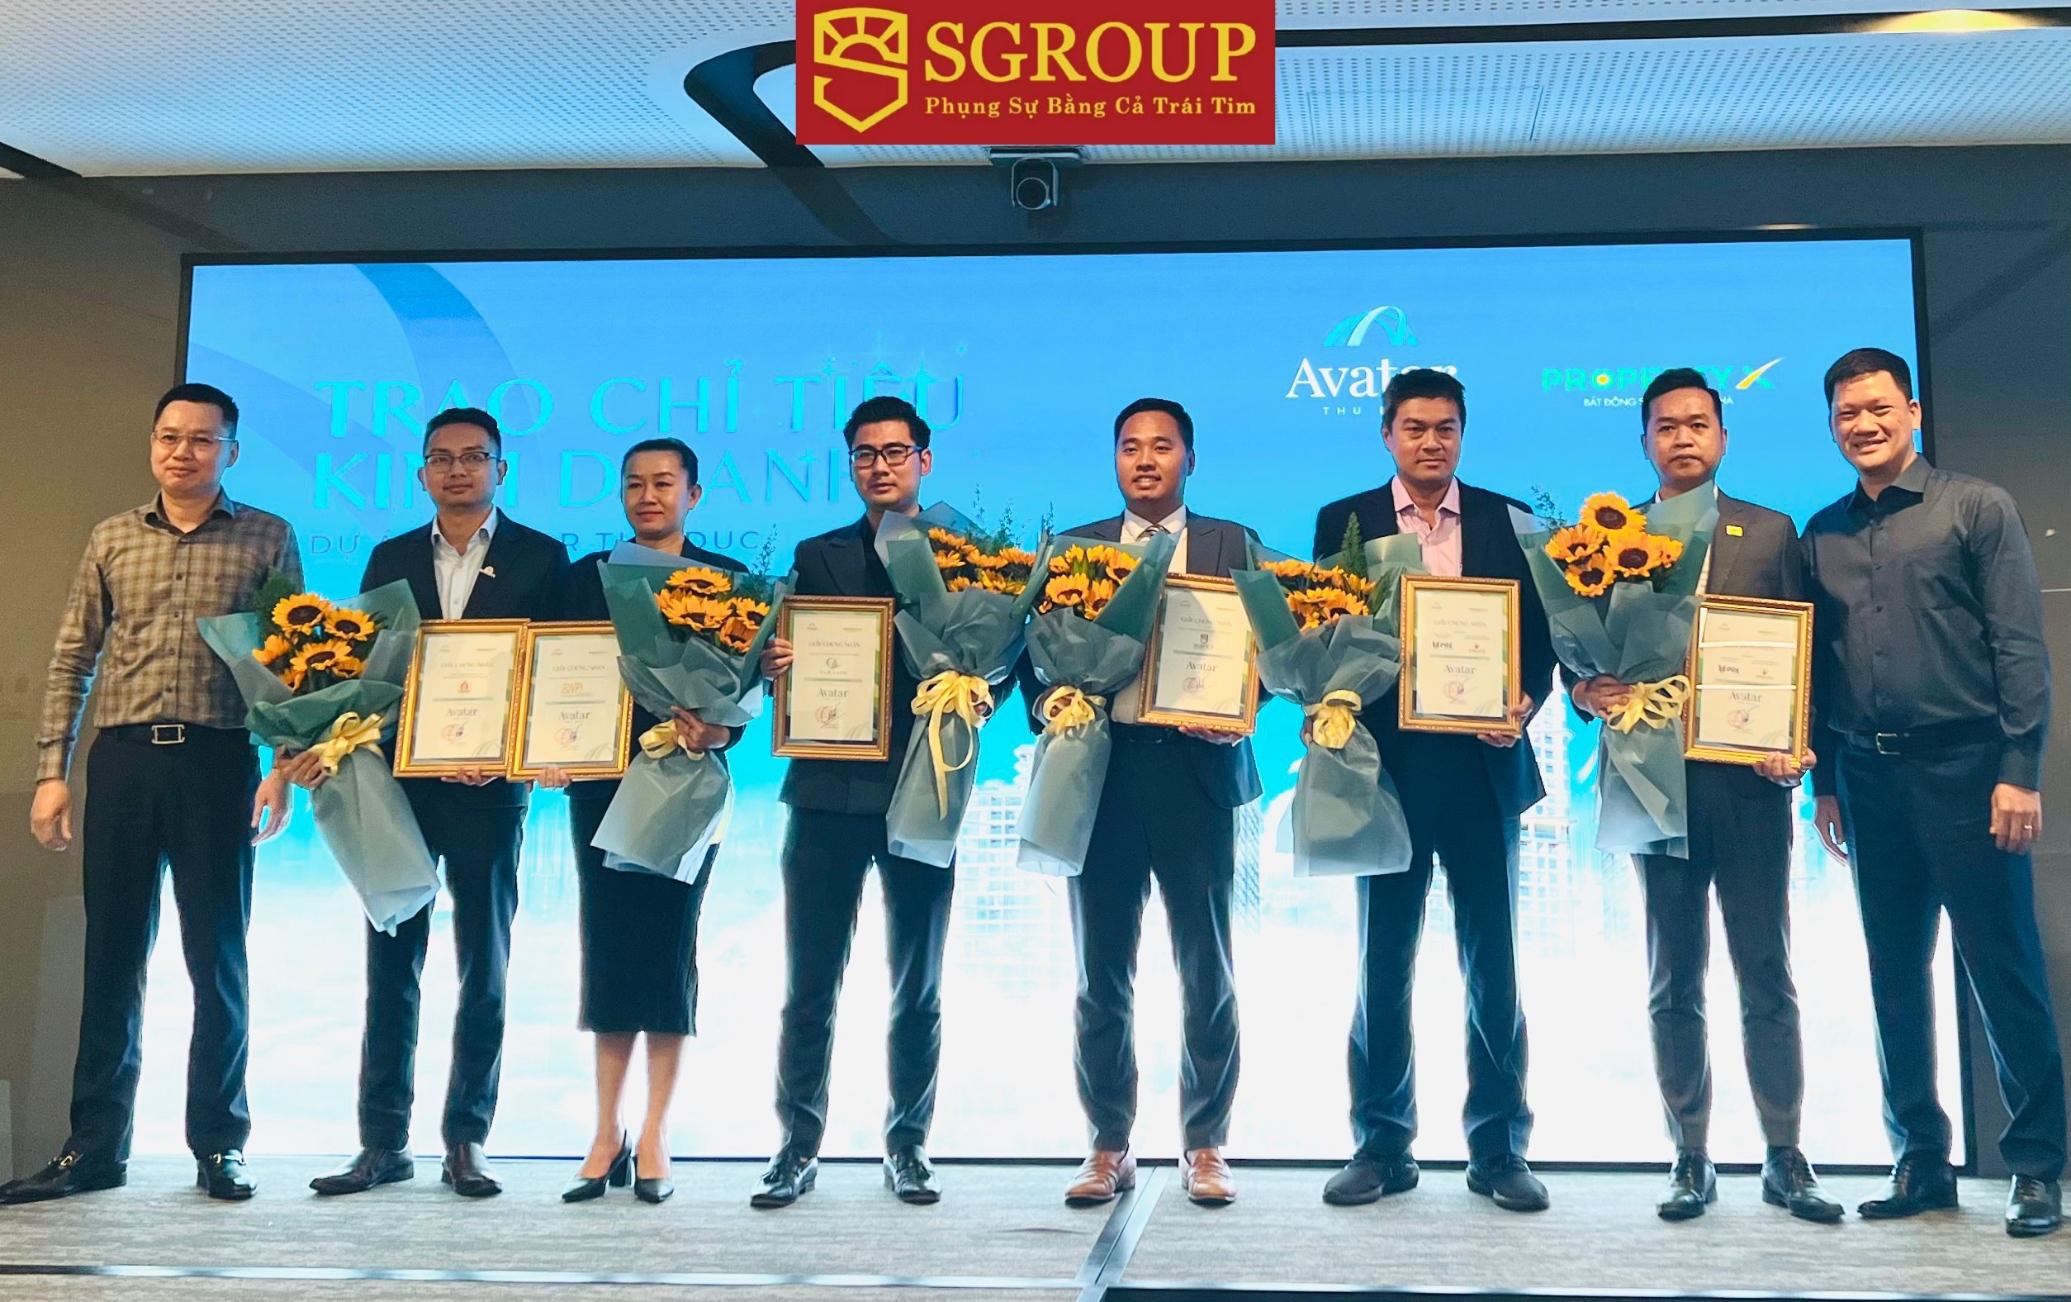 SGROUP và Tập đoàn Hưng Thịnh ký kết hợp tác chiến lược